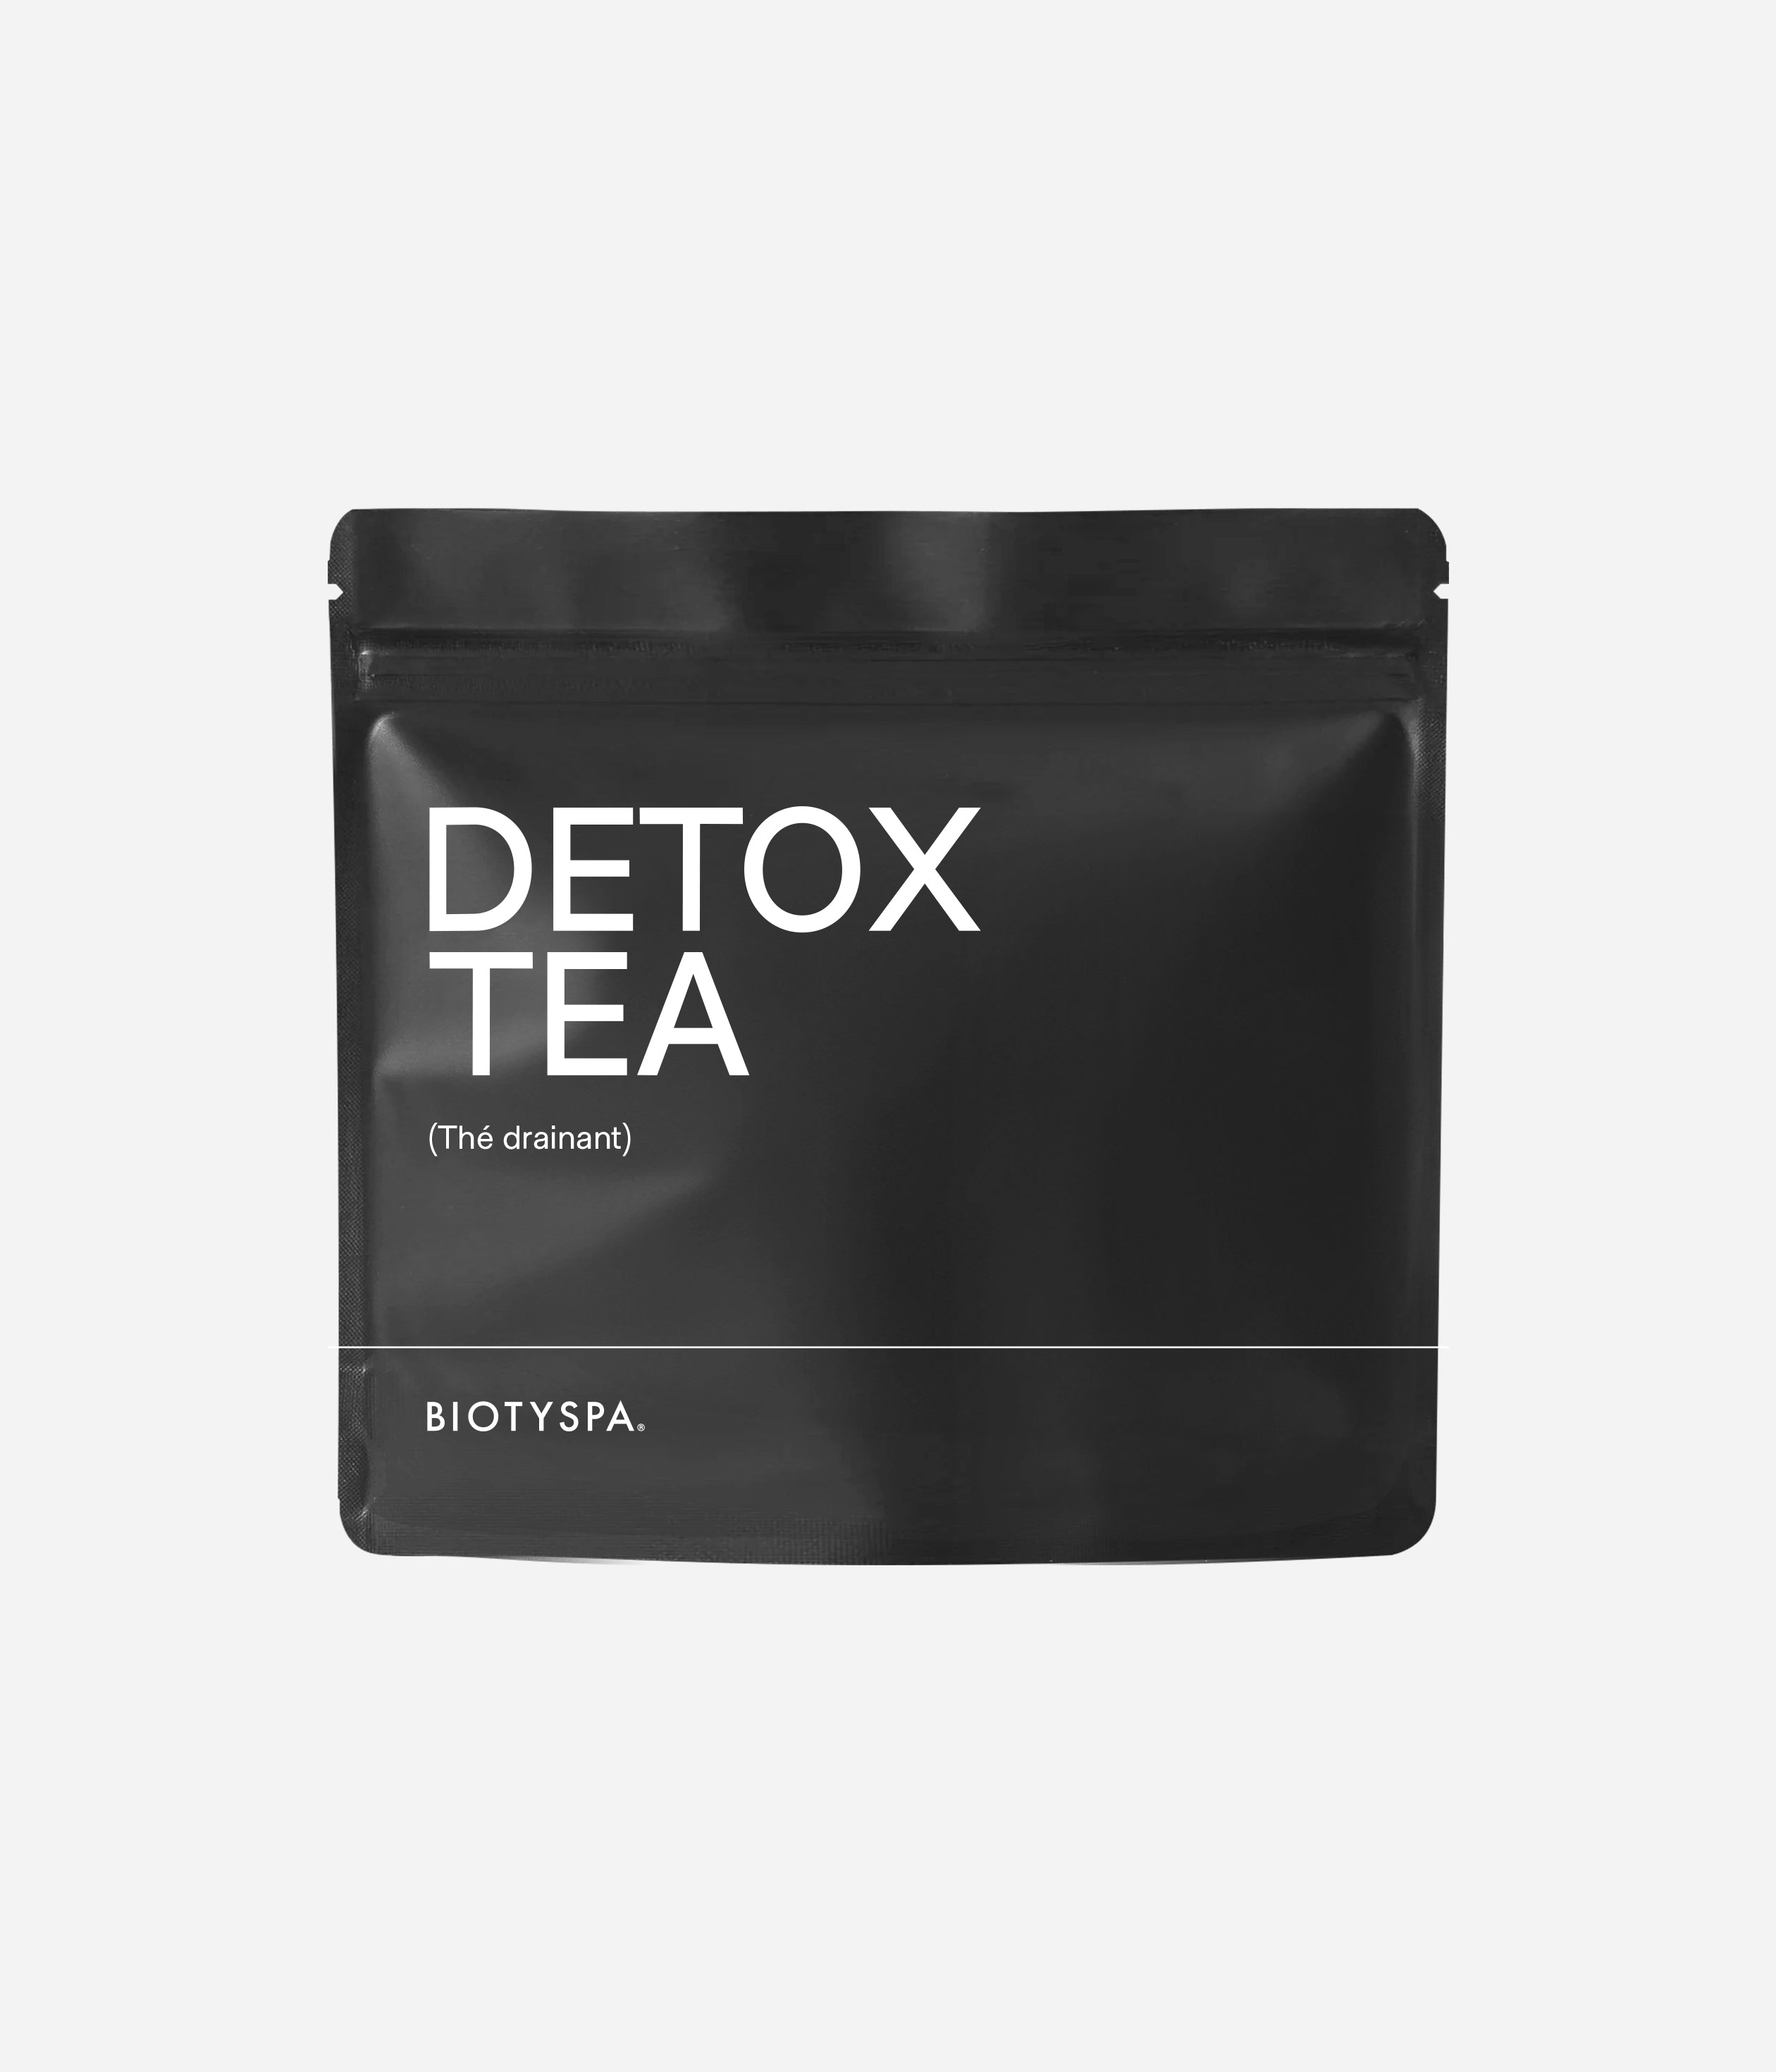 Panda Tea Thé et Infusion Cure Detox Bio - 28 Sachets/Infusettes